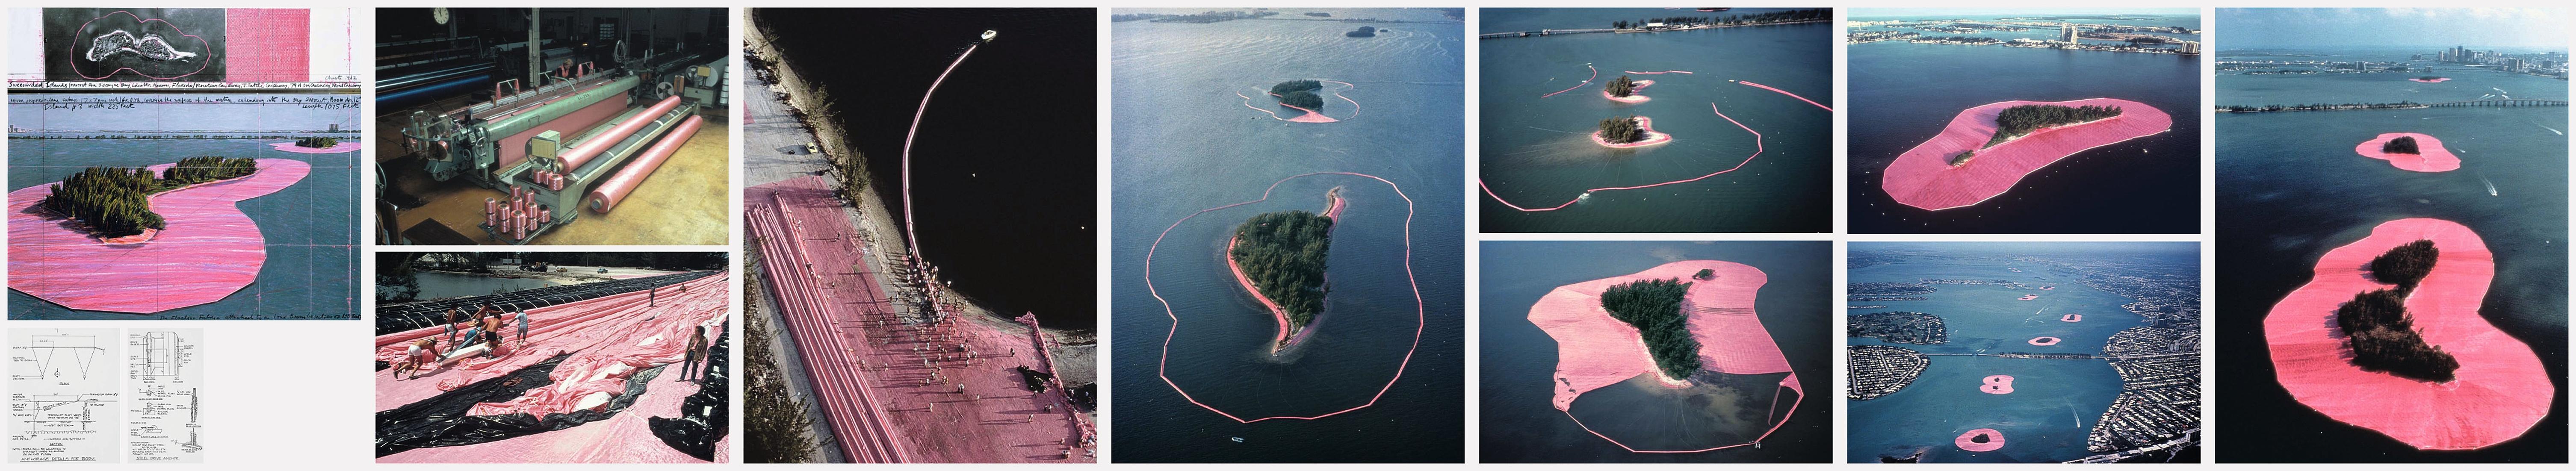 Christo und Jeanne-Claude, umgebene Inseln – Leporello, signierter Druck